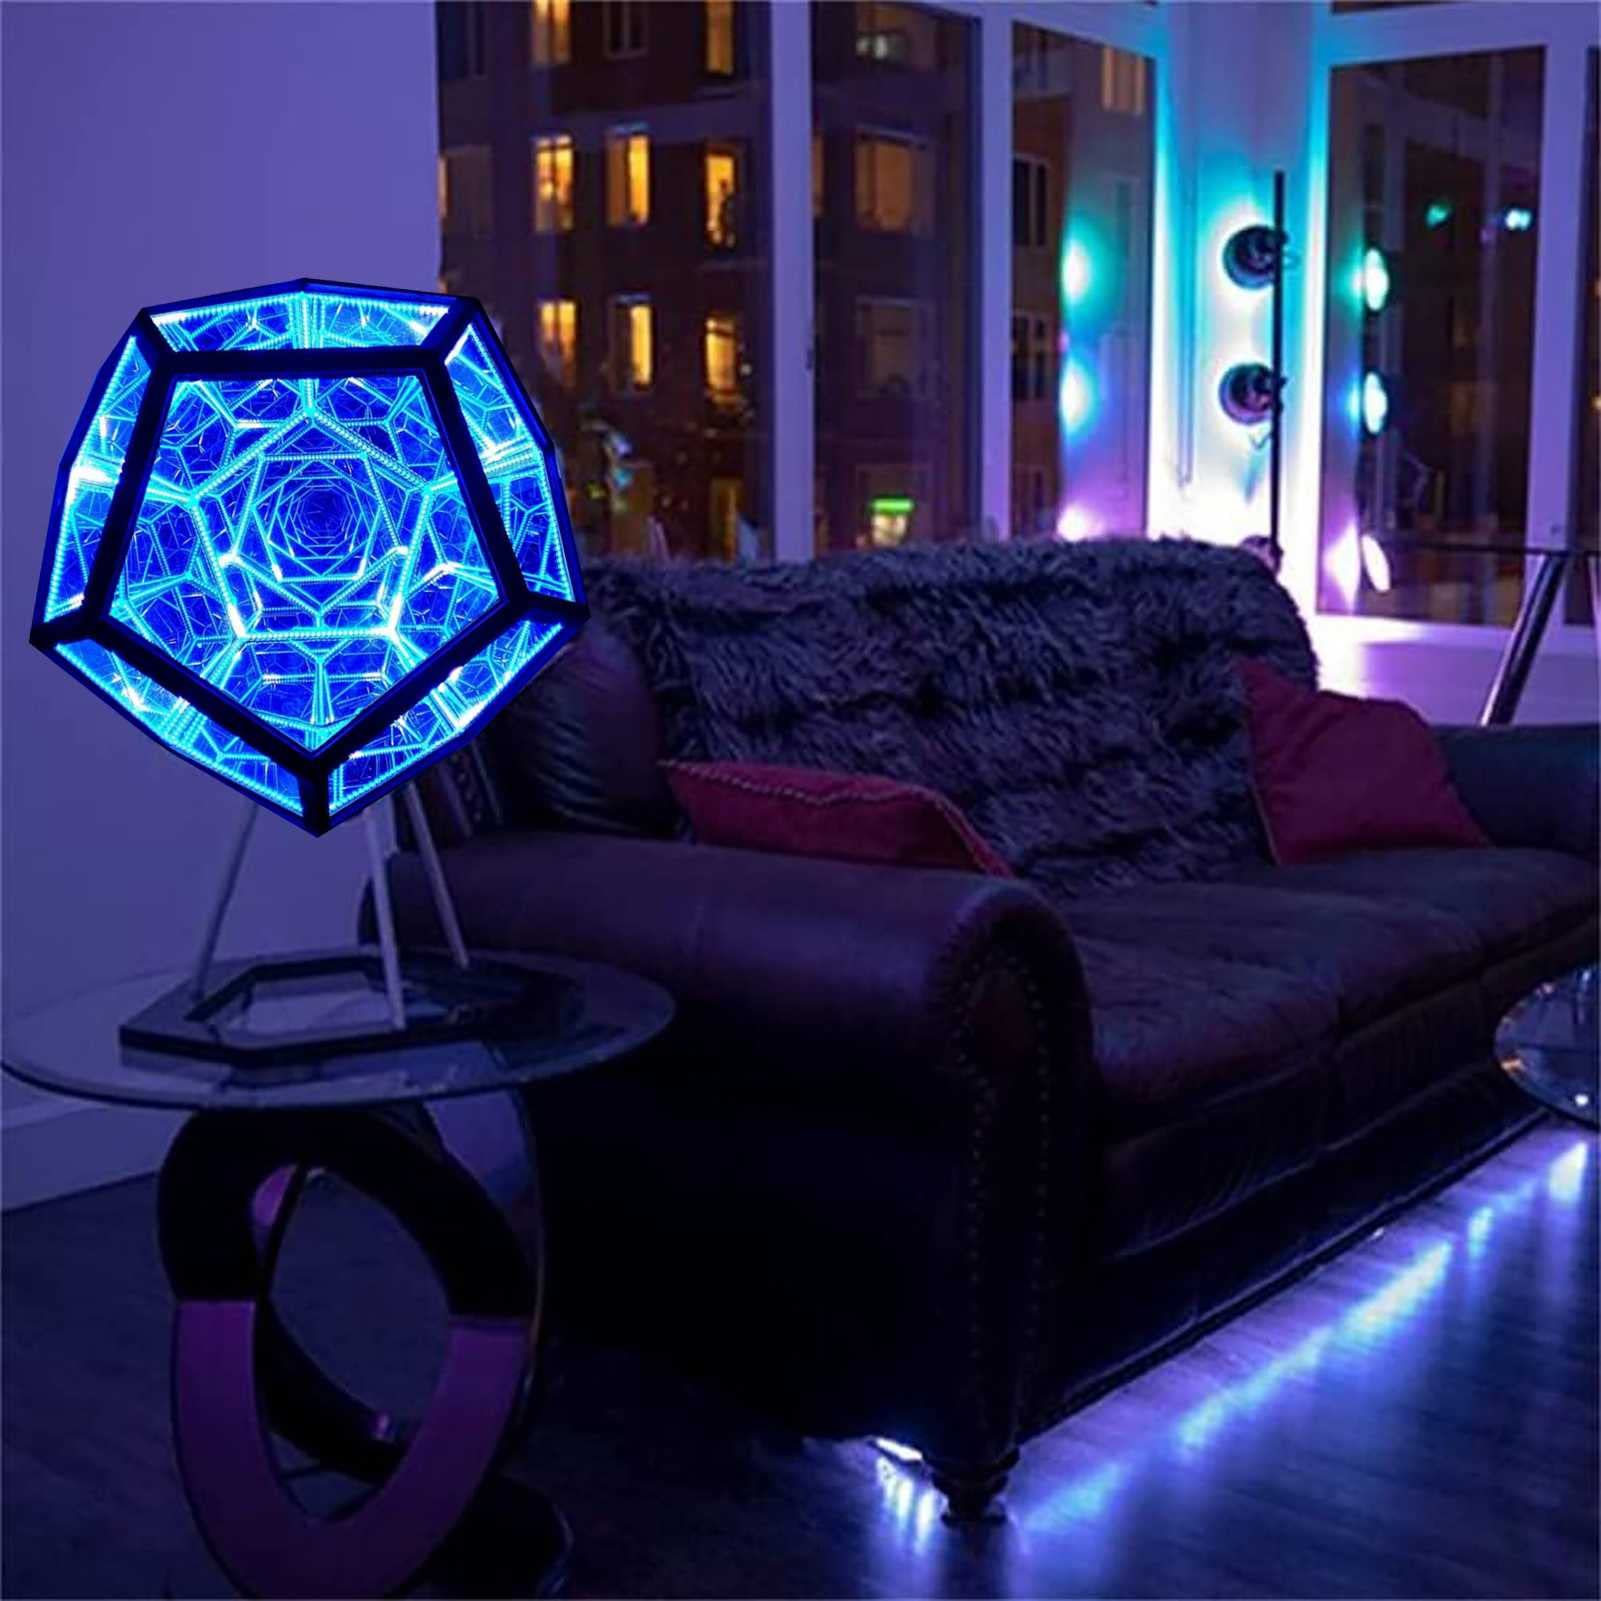 LZH FILTER Led-Nachtlicht Unendliches Dodekaeder-Farblicht Art Decor Tischlampe Kreative Coole Kunstbeleuchtung USB-betriebene Party-Lampen für Home Desktop Dekoration